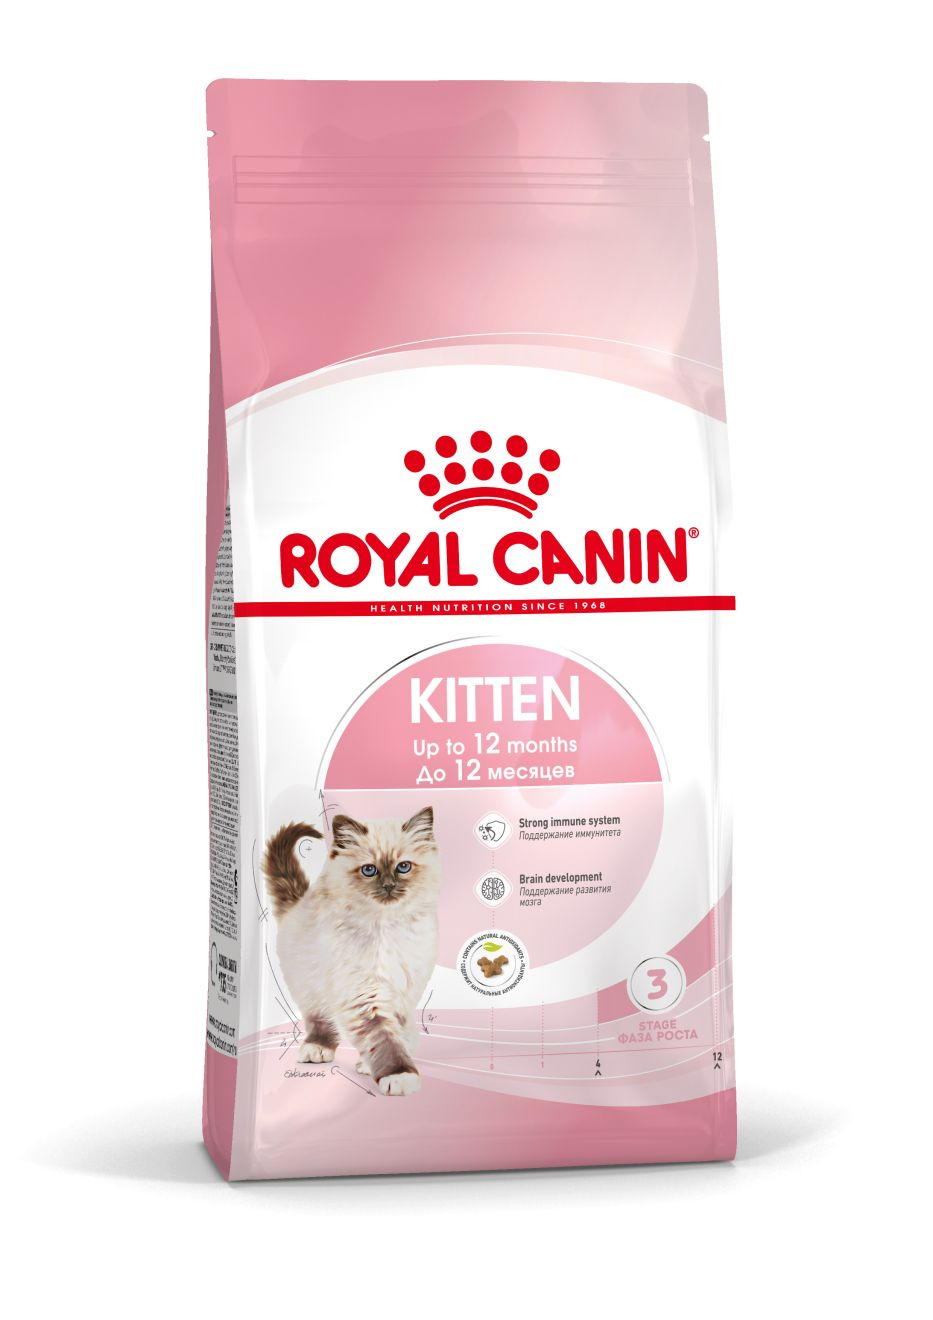 Как часто котенок должен ходить в туалет? | Royal Canin